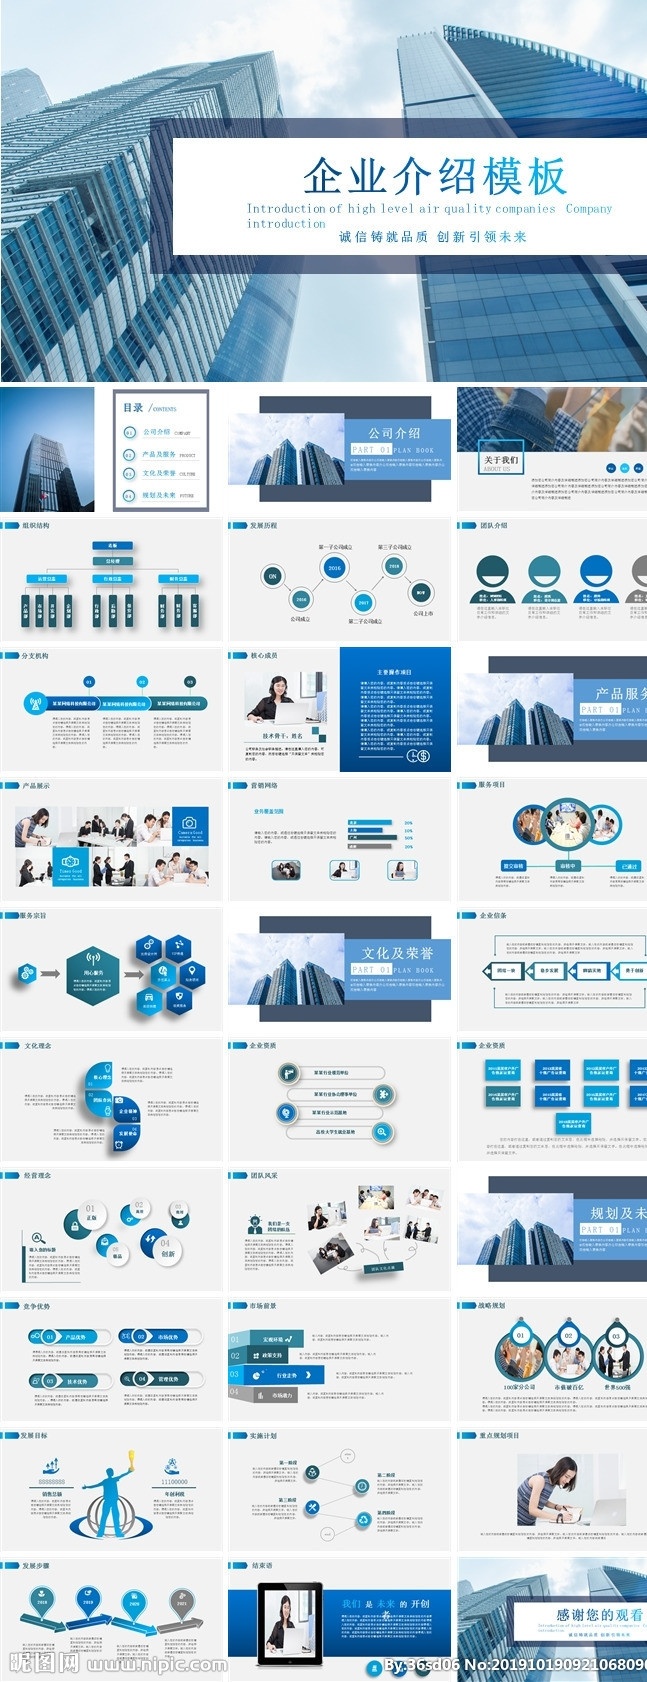 蓝色 商务 企业 介绍 模板 通用 多媒体 商务科技 pptx